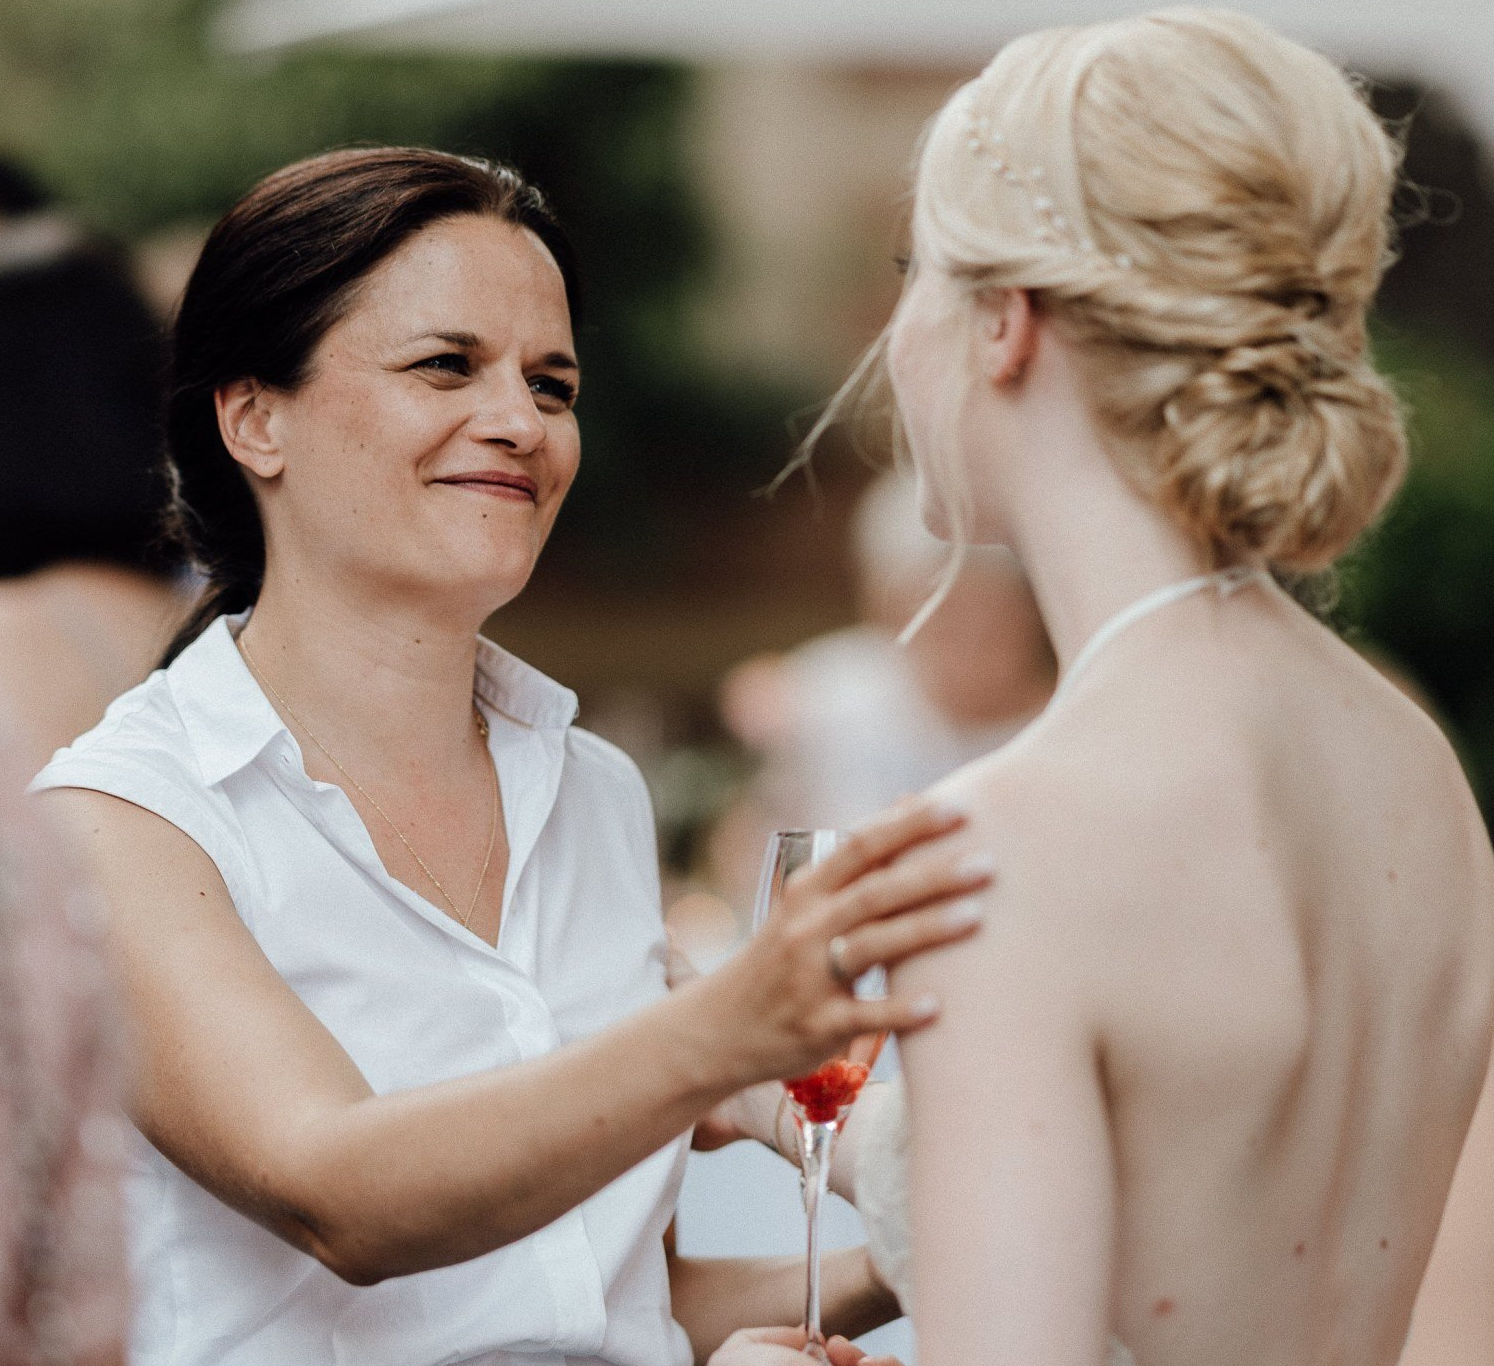 Die freie Traurednerin Kristina Kutz legt im Gespräch voller Achtsamkeit ihre Hand auf die Schulter der Braut.